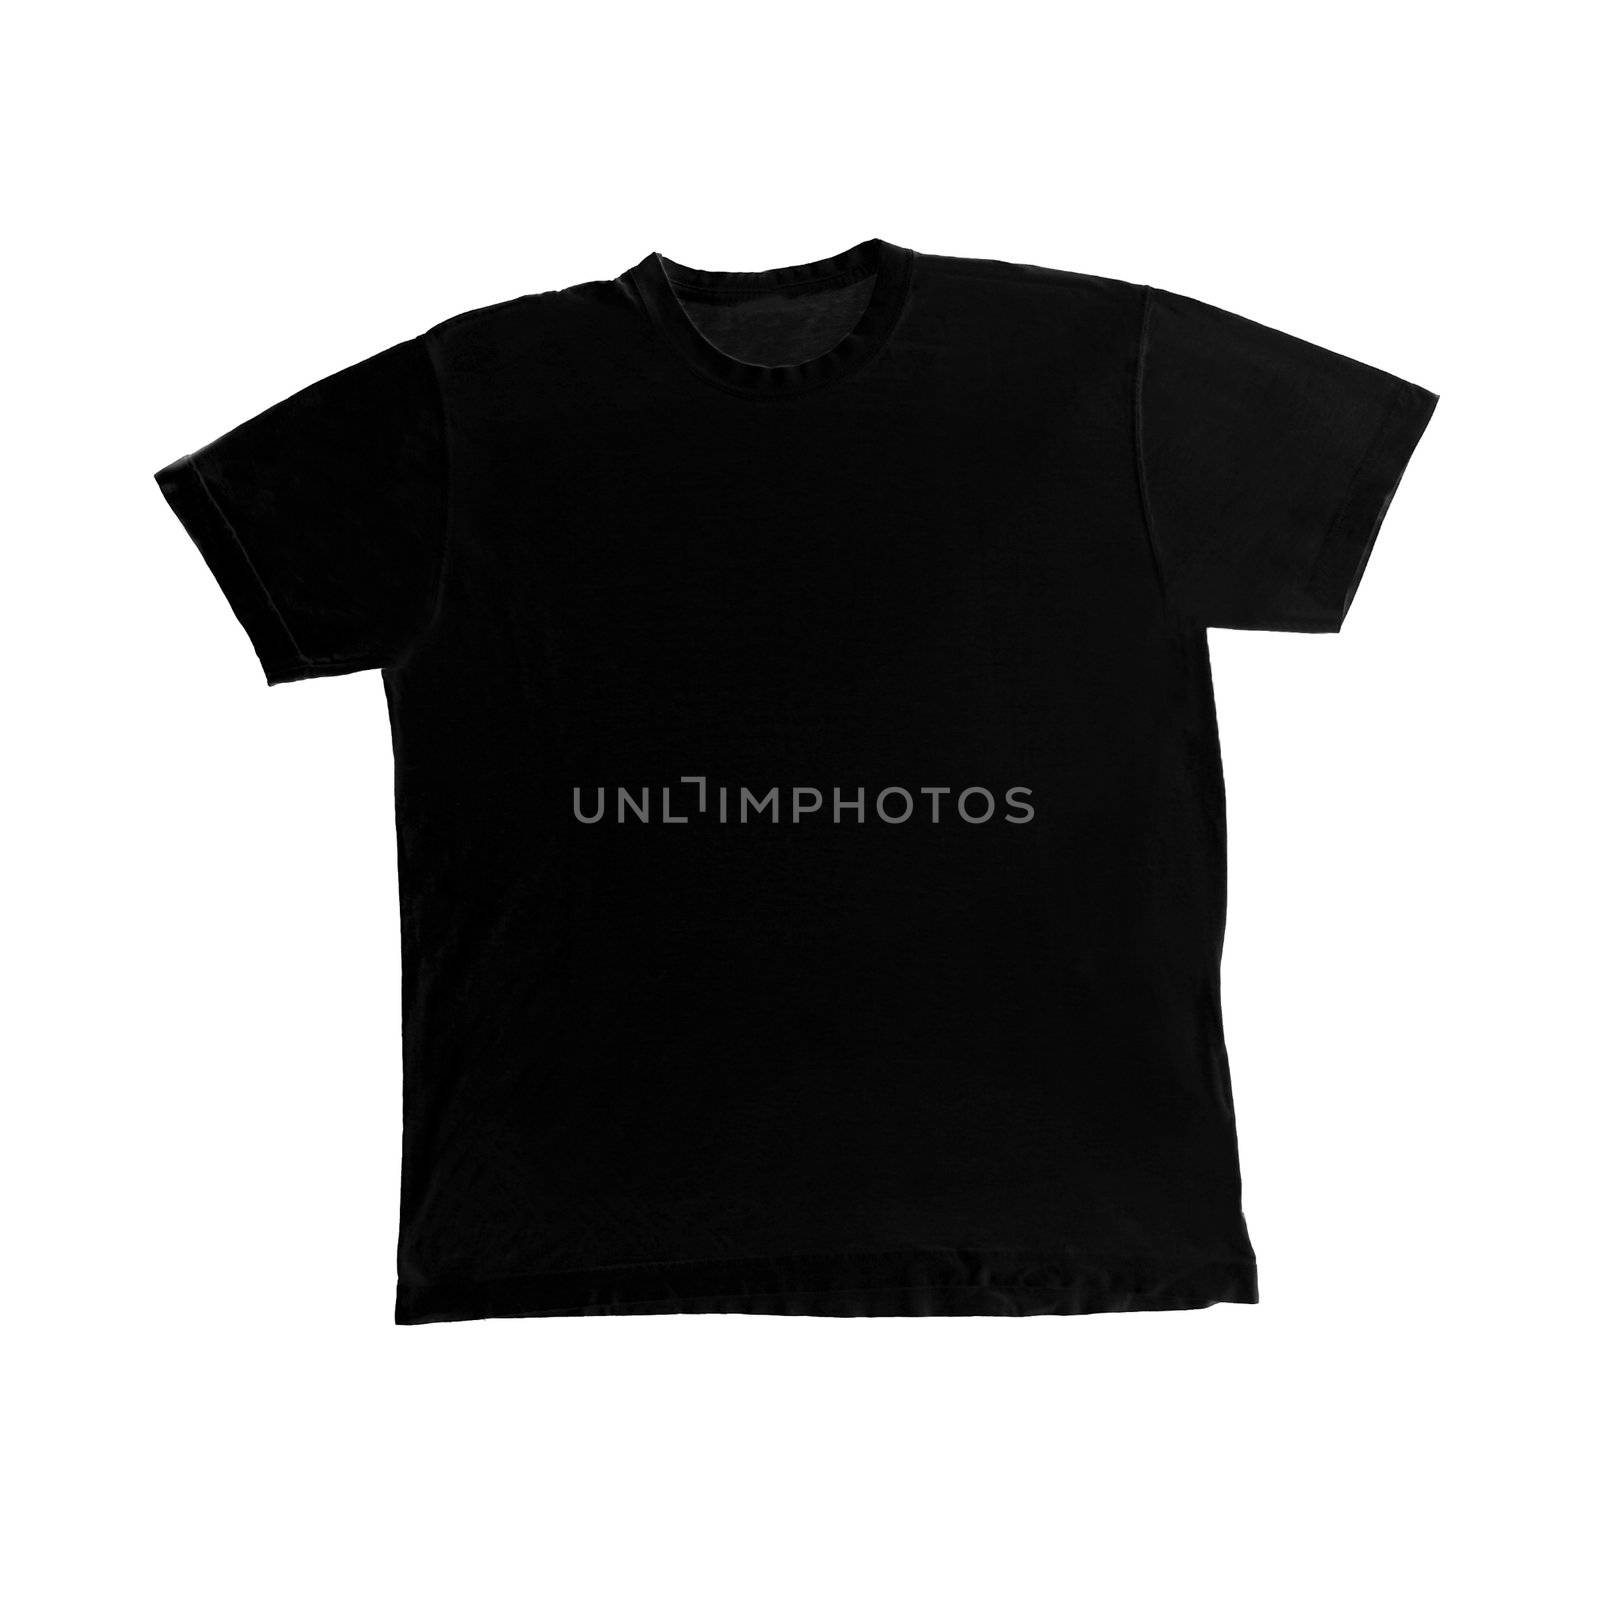 Black t-shirt shape isolated on white background